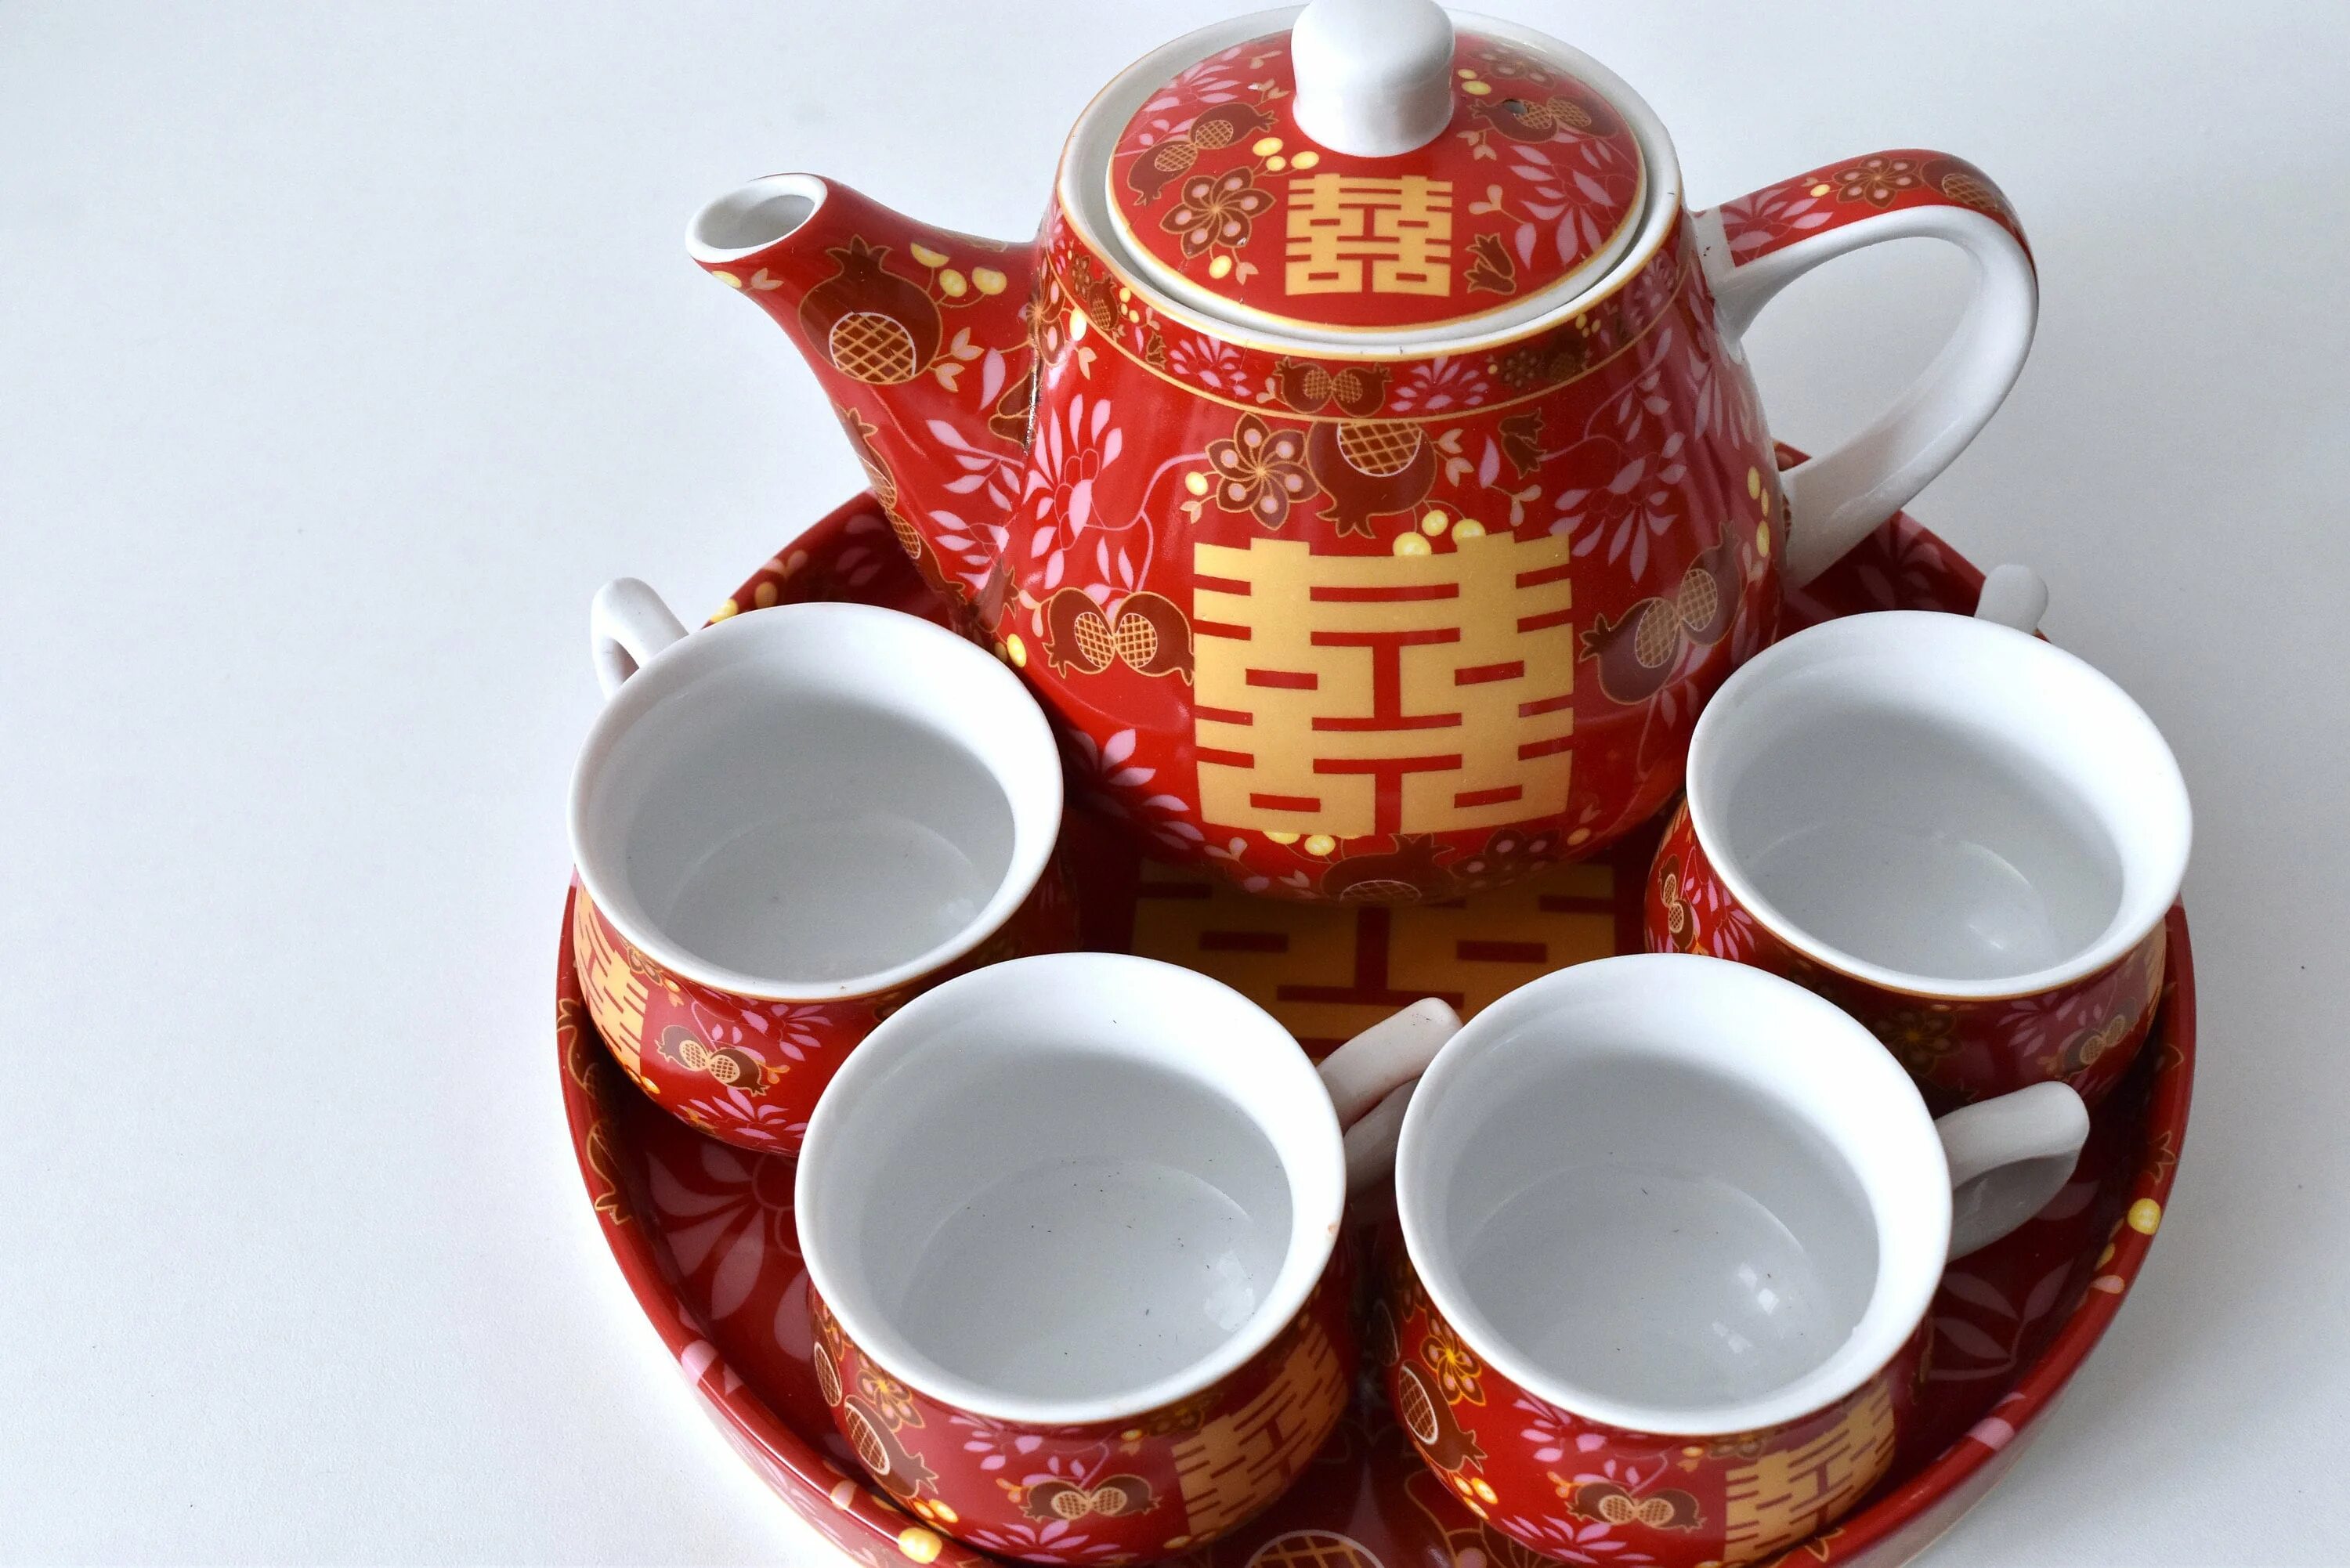 Чайный сервиз китай. Китайский чайный сервиз Баолинь. Чайный набор золотой дракон heyday China. Чайный сервиз китайский глиняный. Китайский фарфор для чайной церемонии.